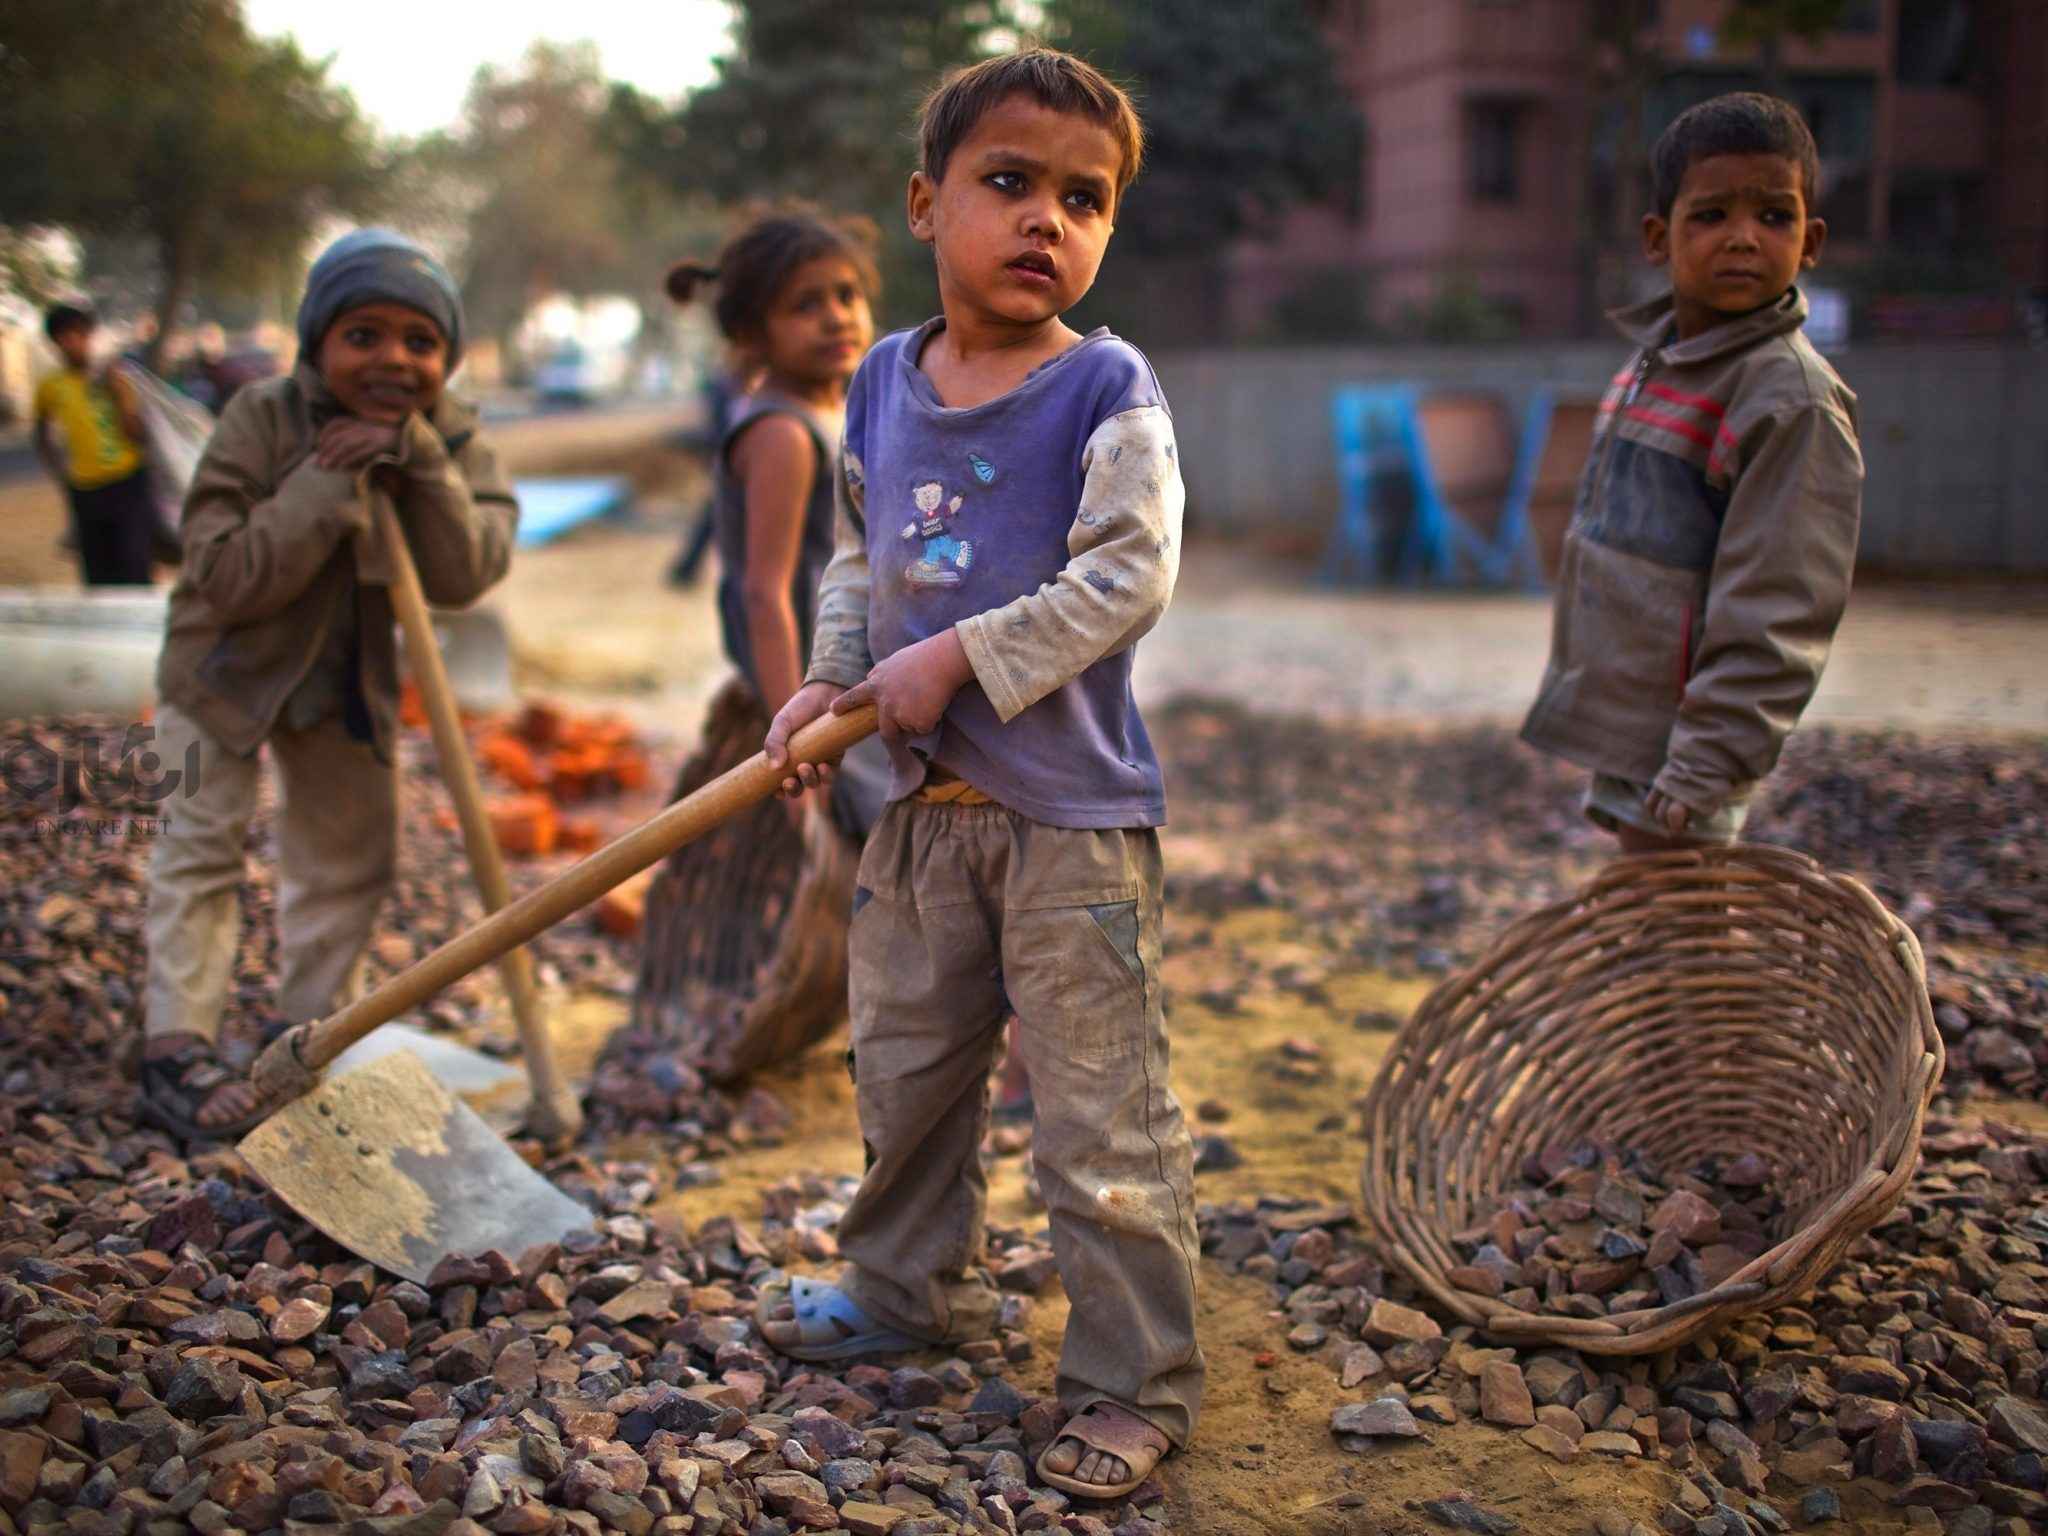 f7a5e5cab64480d96e0554f7b227a8dc - کار کودکان را متوقف کنید (گالری عکس) - کودکان کار, کودکان خیابانی, کار کودکان, حقوق کودک, stop child labour